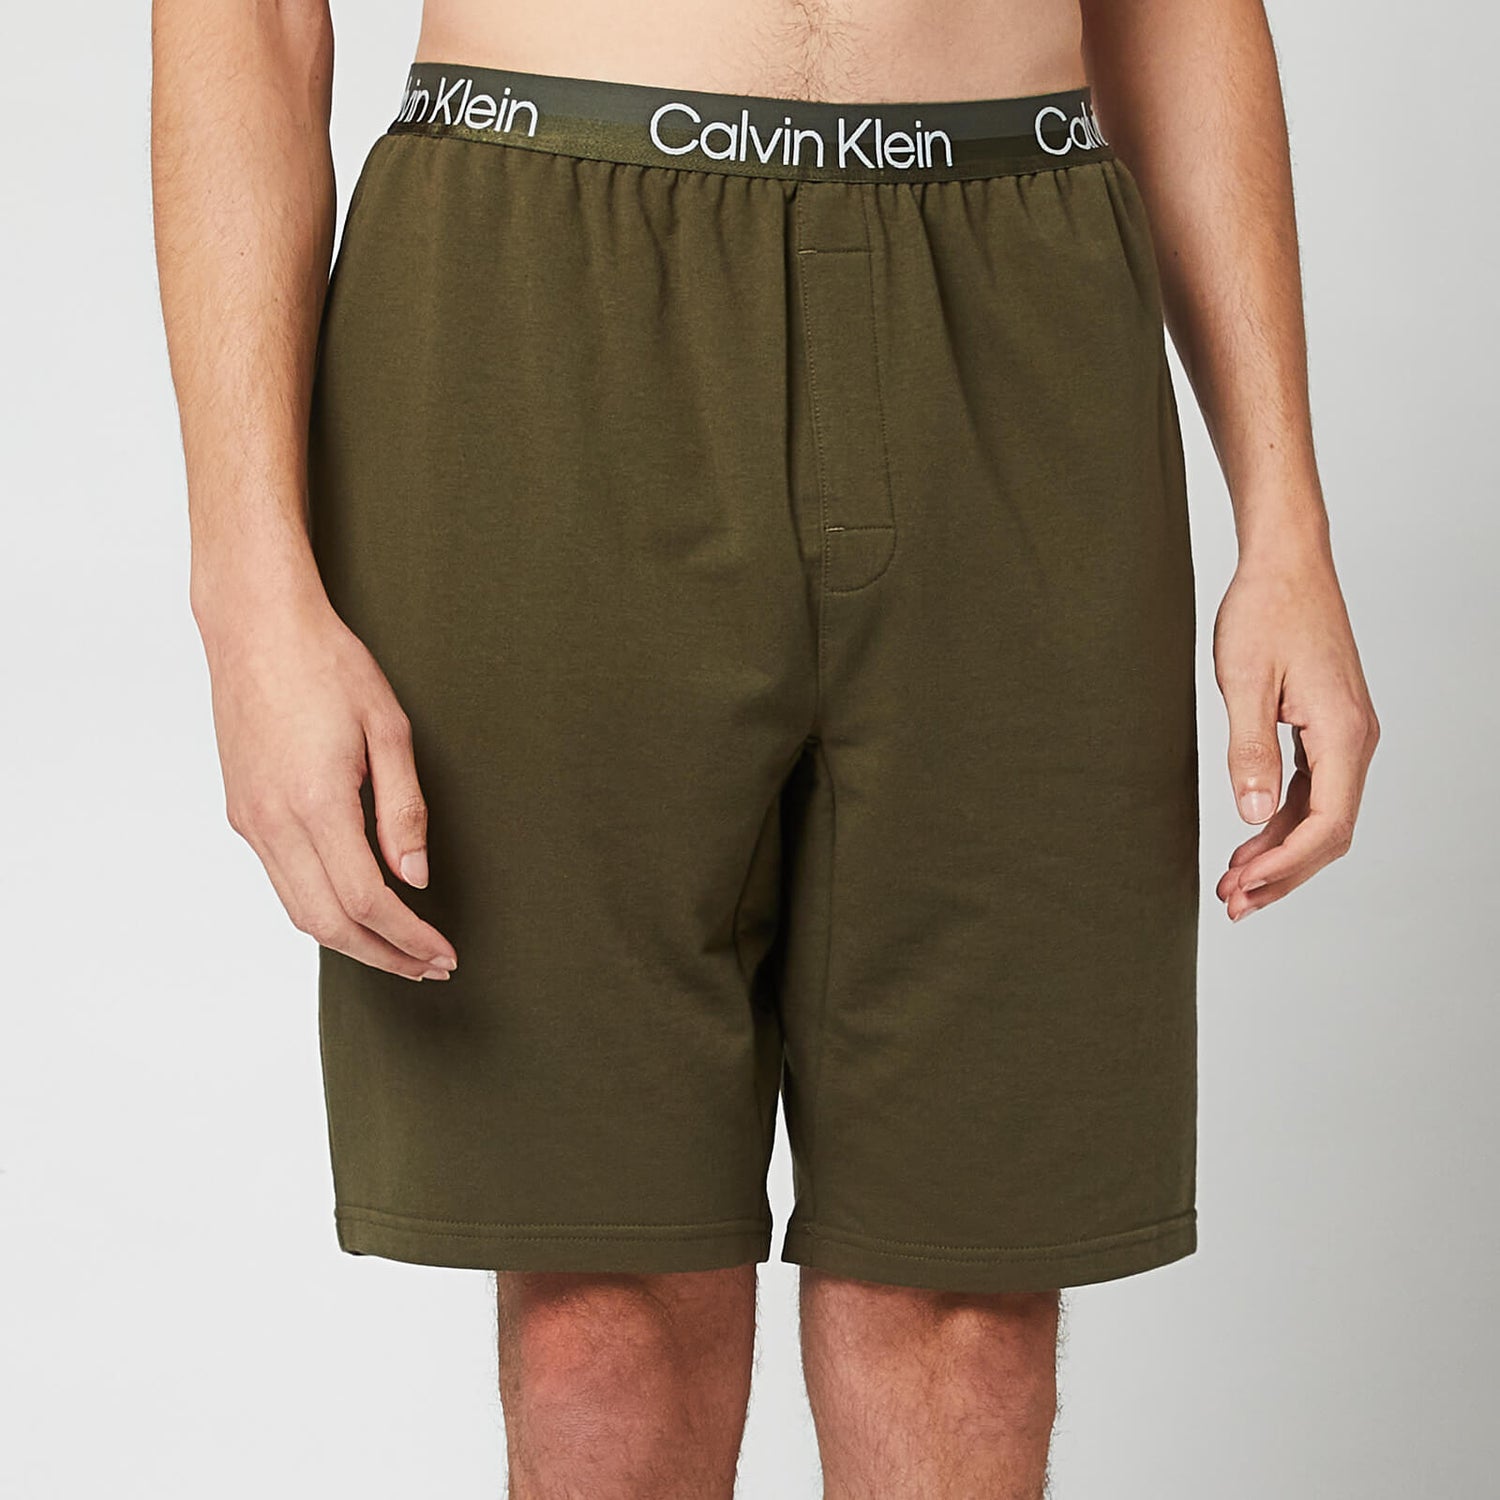 Calvin Klein Men's Sleep Shorts - Army Green - S